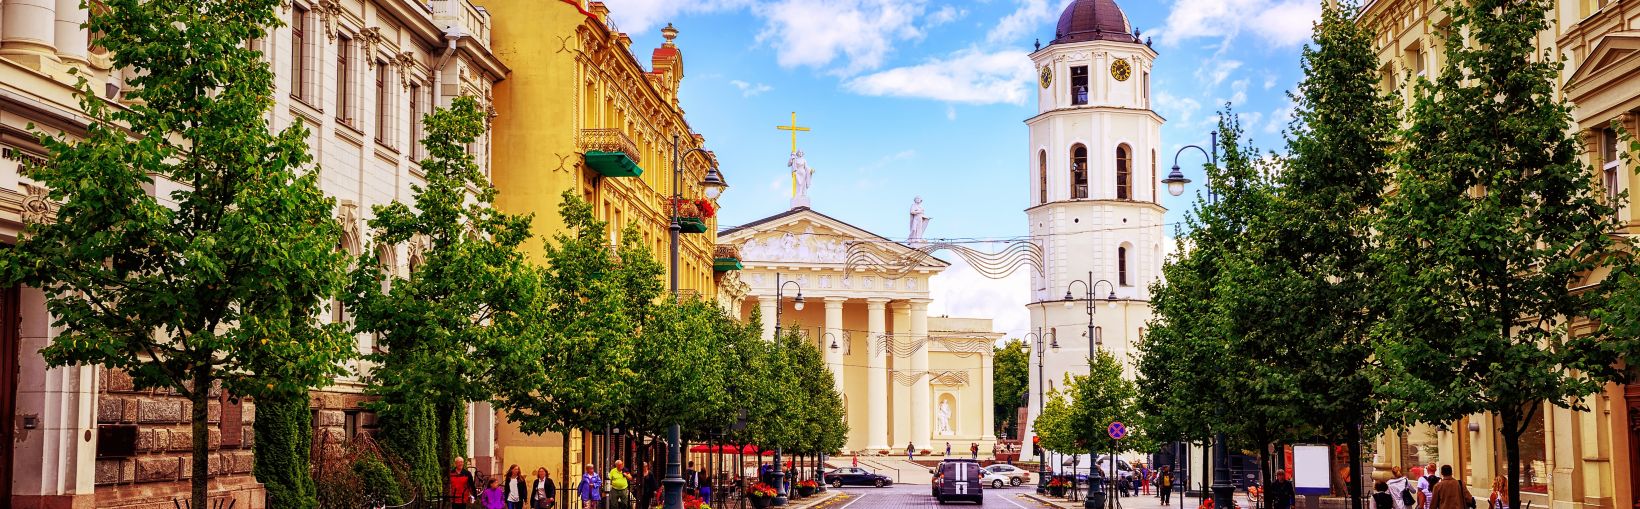 La popular zona de compras y restauración de la Plaza de la Catedral vista desde la Avenida Gediminas, la principal calle de Vilna, Lituania.